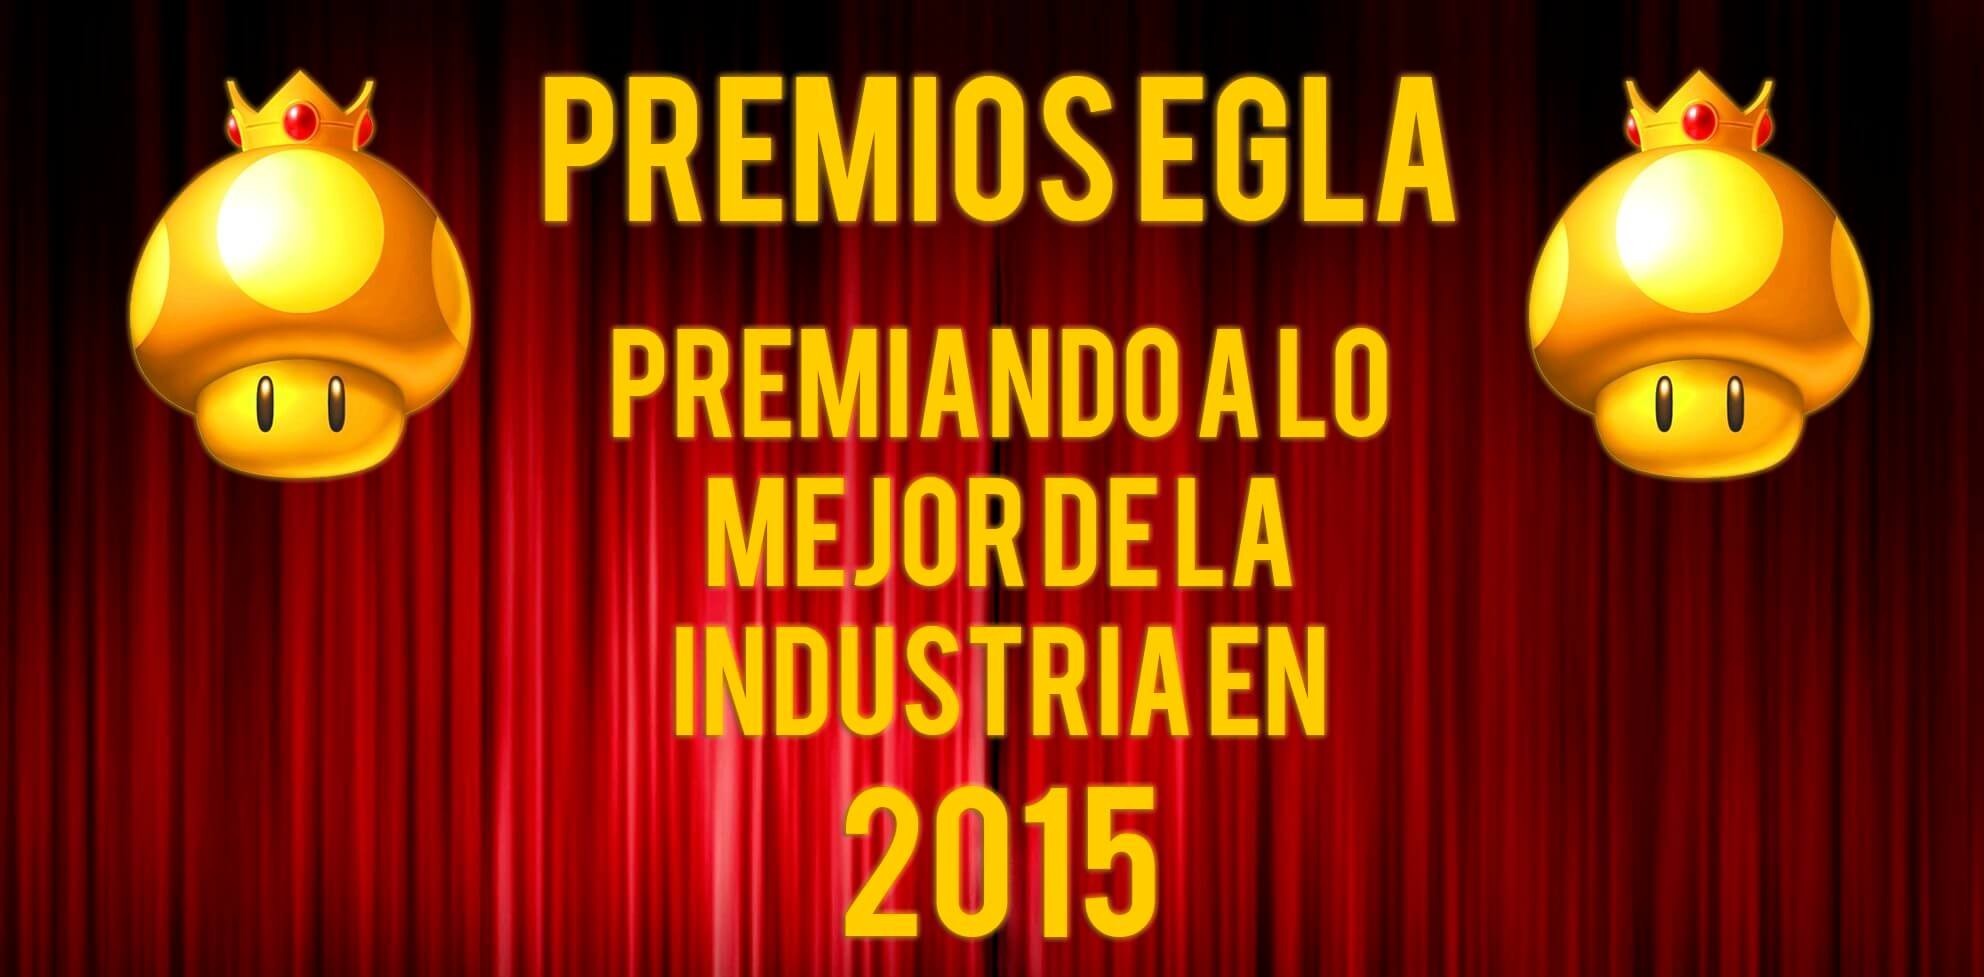 Promo Premios EGLA 2015